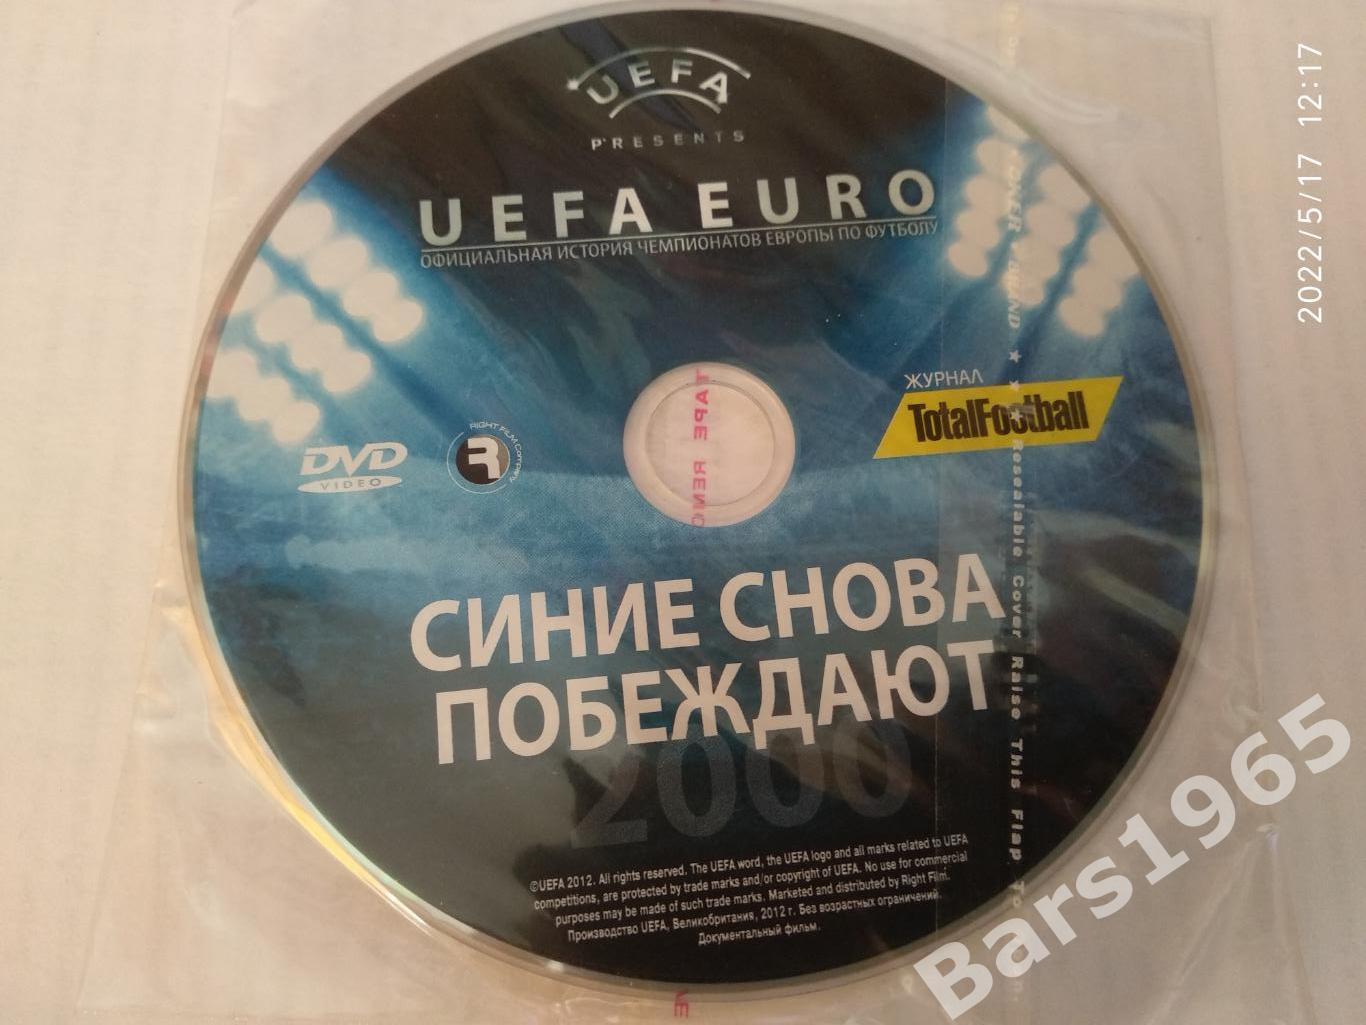 UEFA EURO Синие снова побеждают DVD